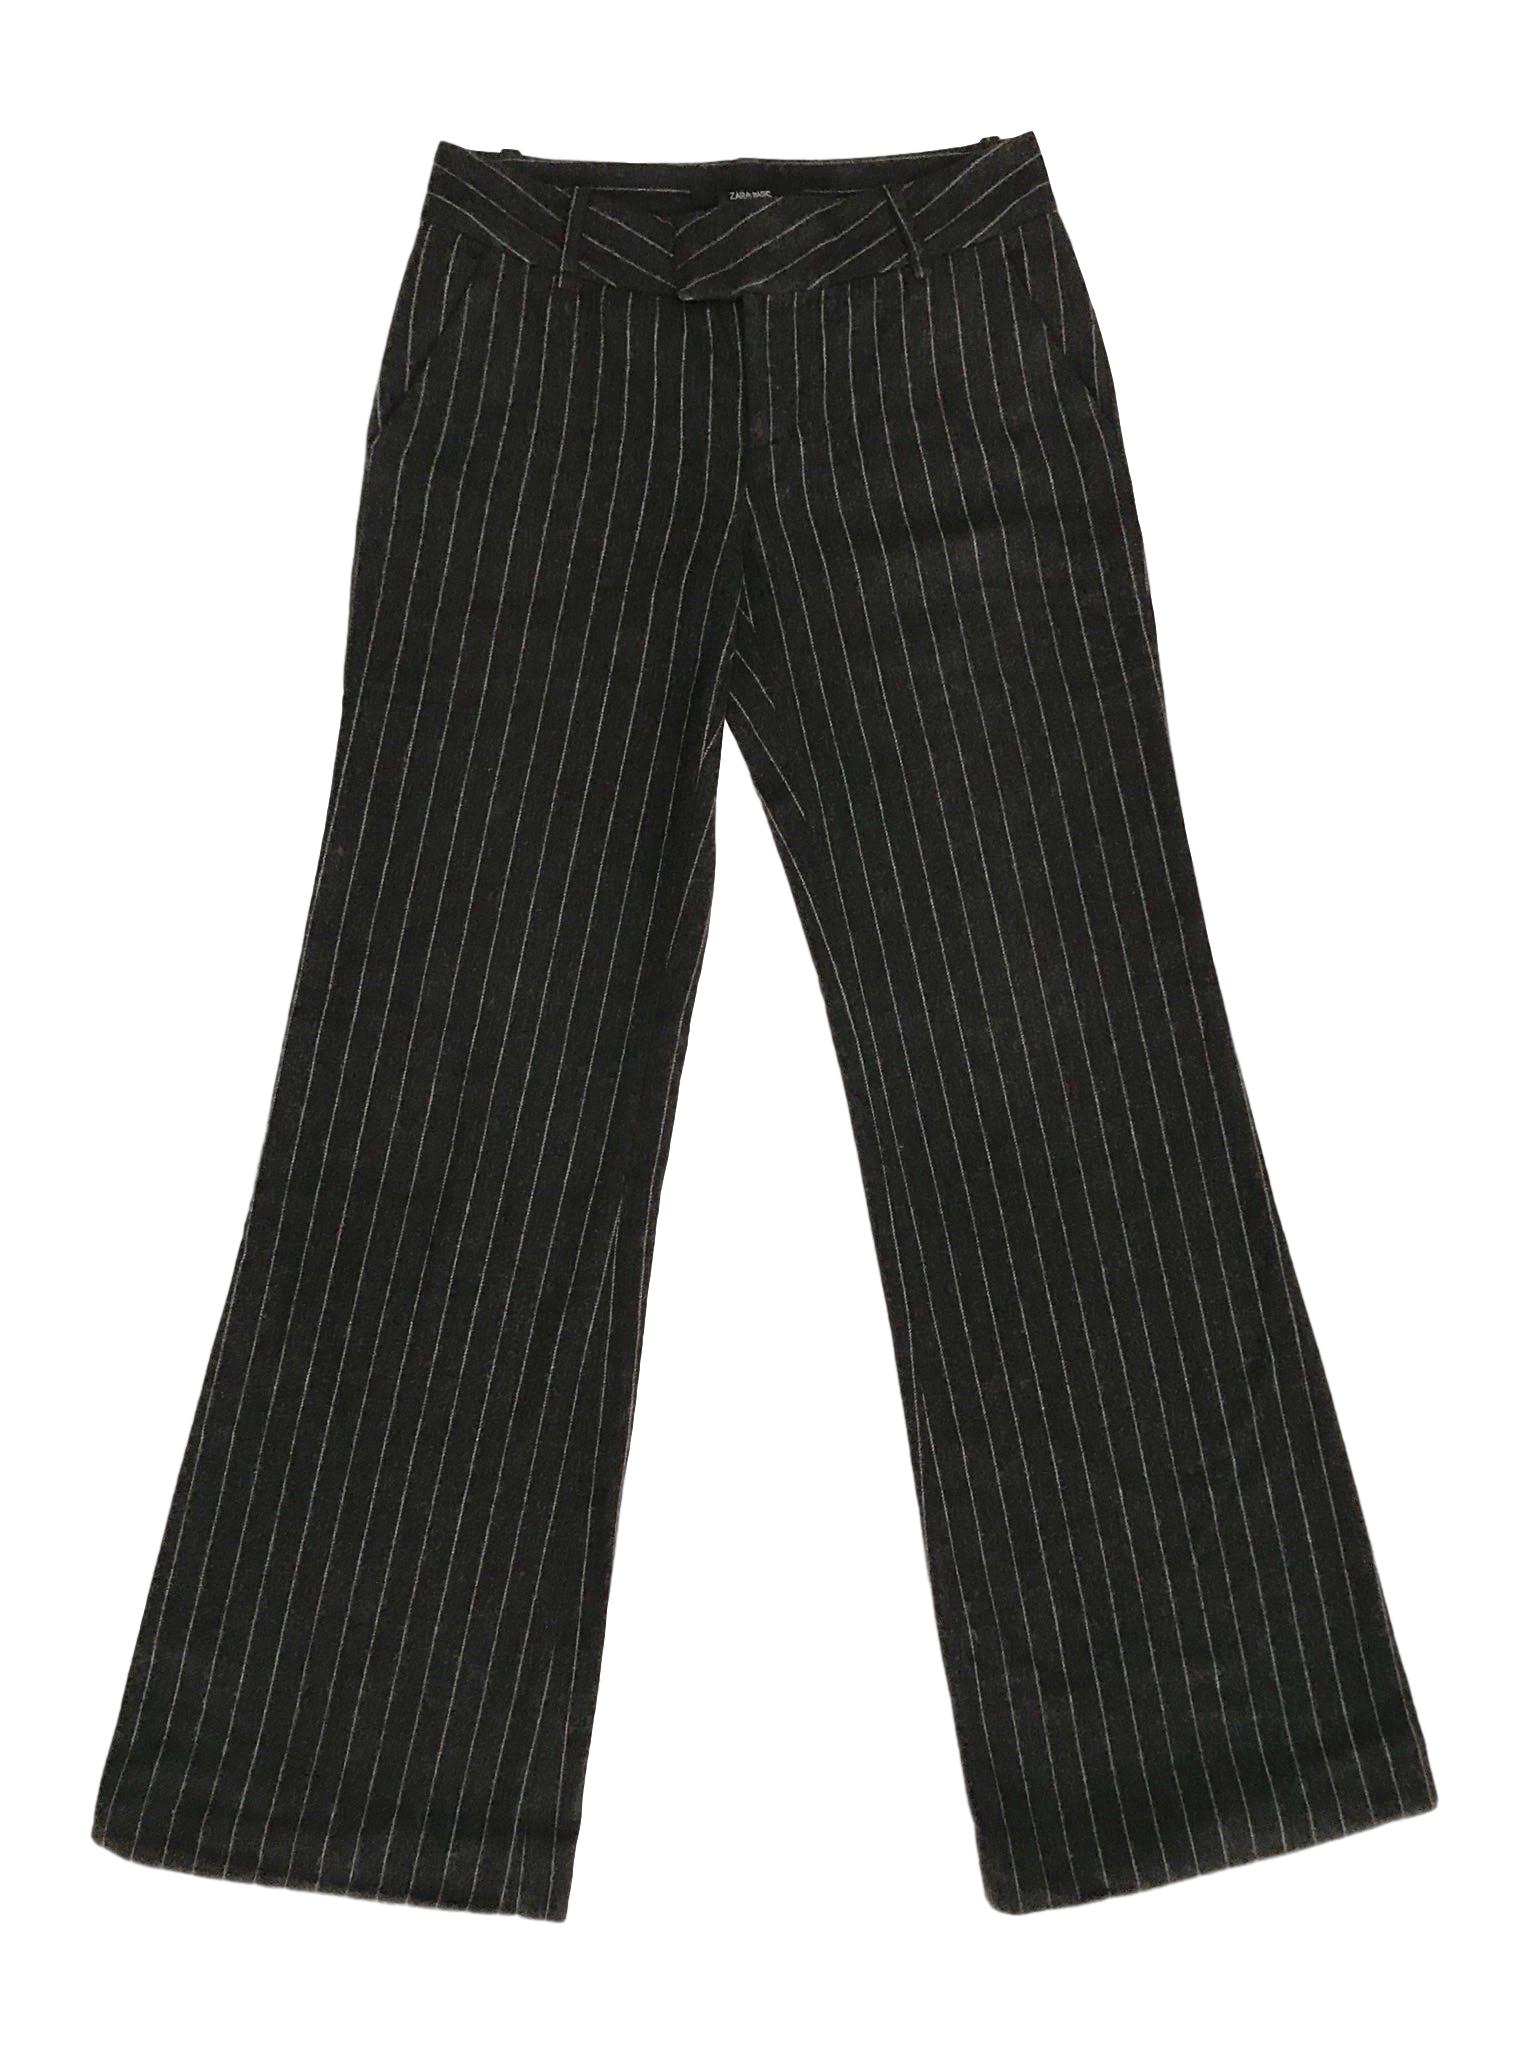 Pantalón Zara 70% lana gris con líneas plomas, corte semicampana. Precio original S/ 150